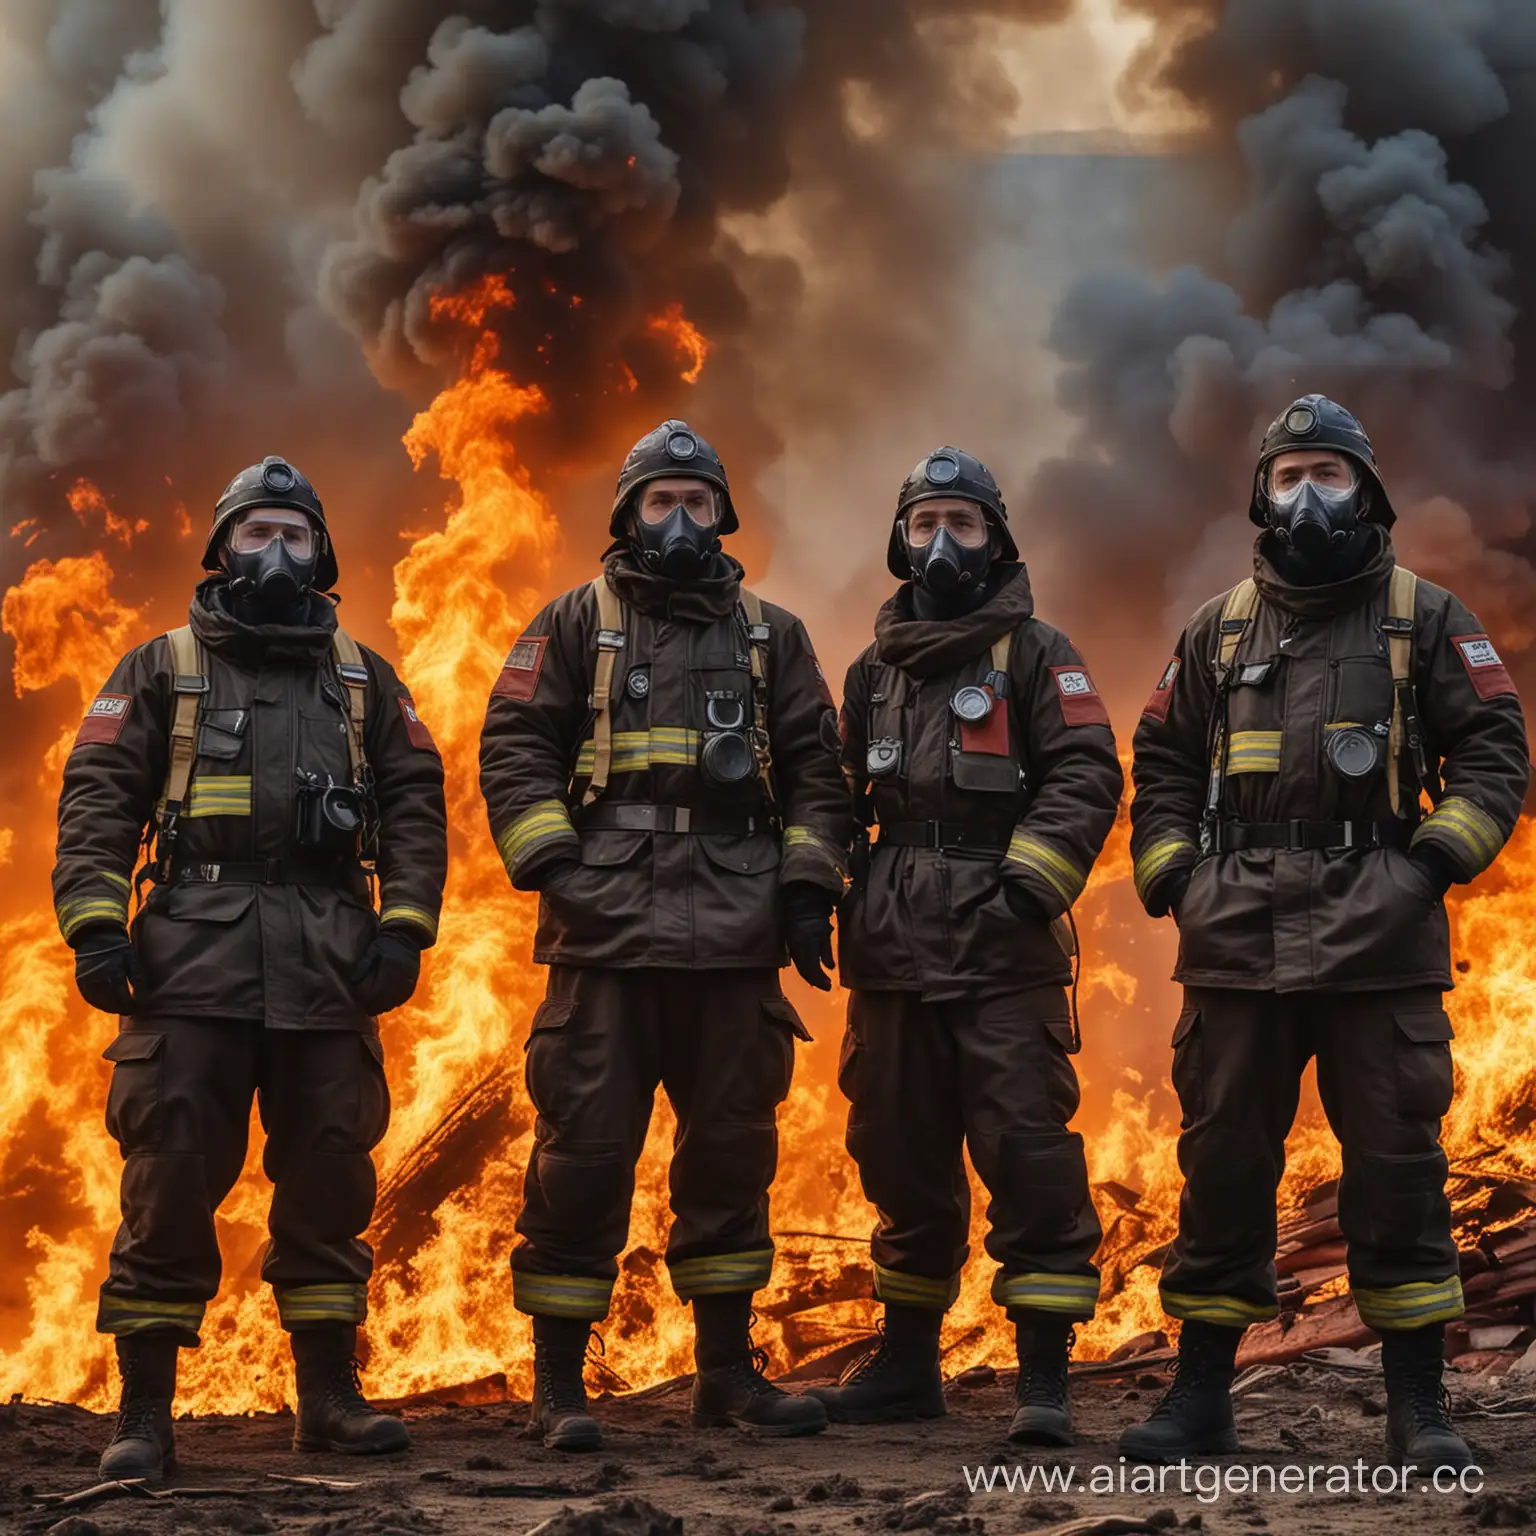 Стоит звено ГДЗС в дыхательных масках из Российских пожарных в крутой позе, на фоне пожар и большой вектор вверх из огня, все эпично